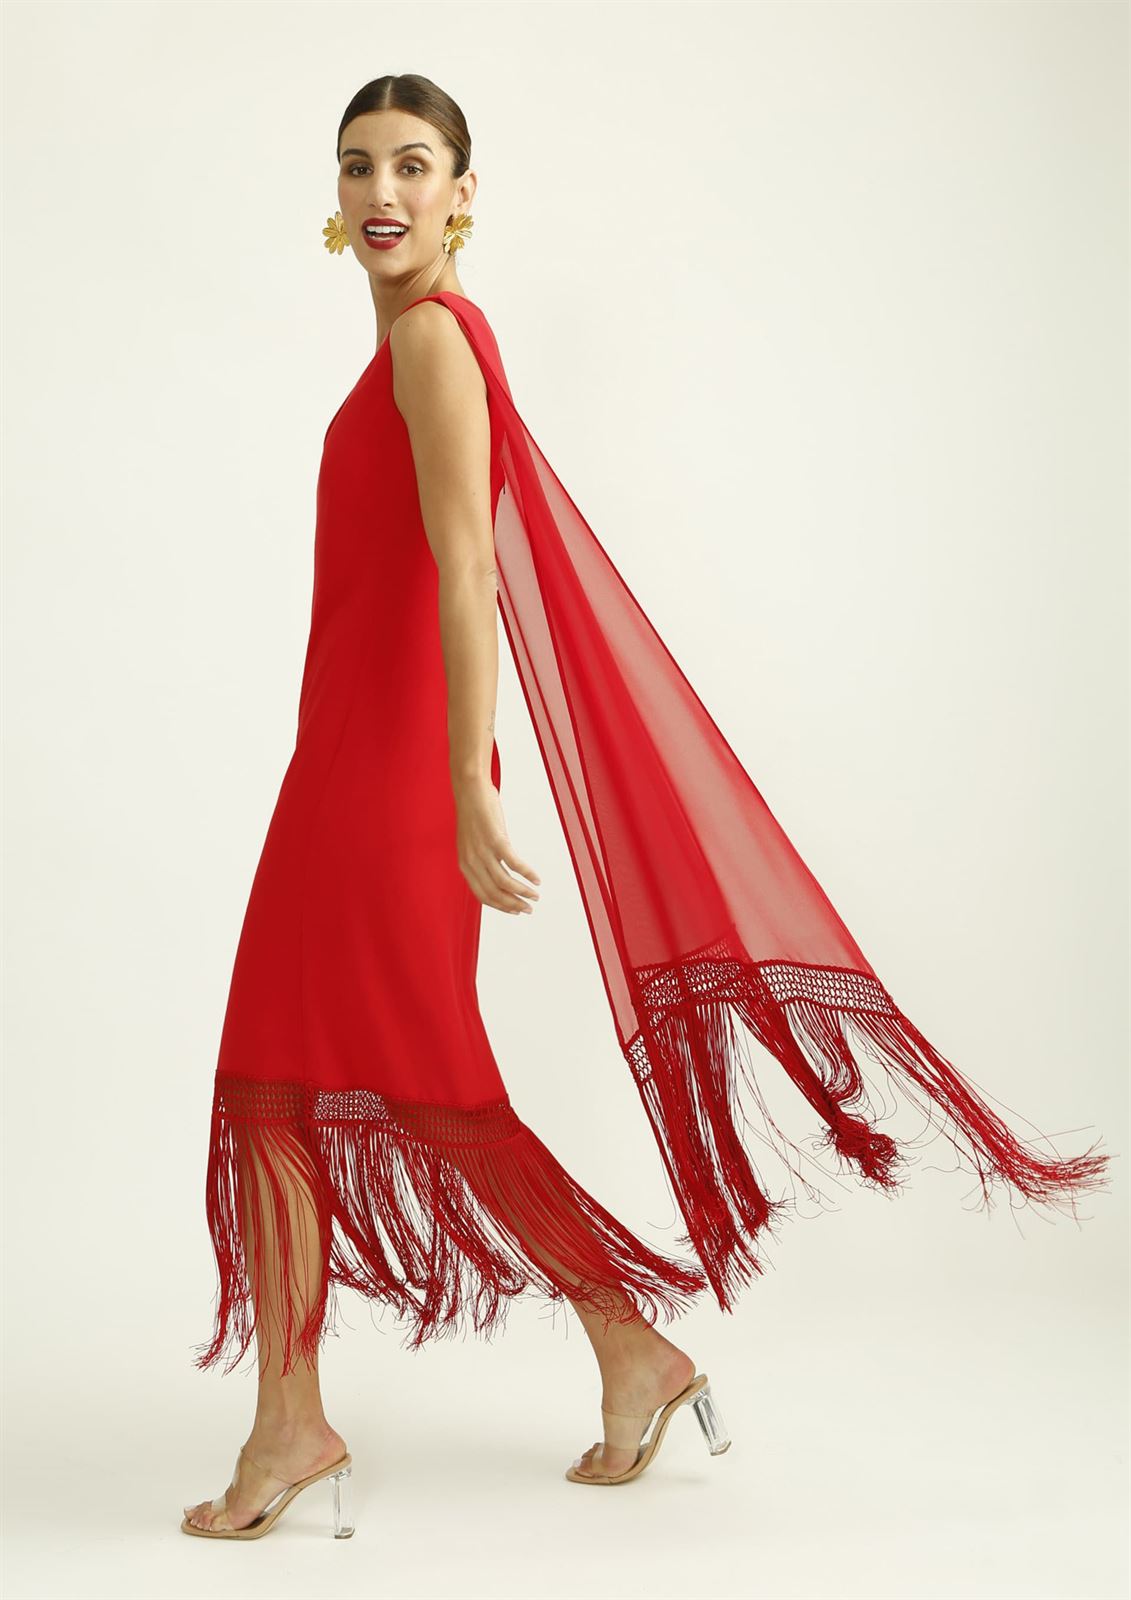 ALBA CONDE Vestido Rojo con Flecos en el Bajo - Imagen 2